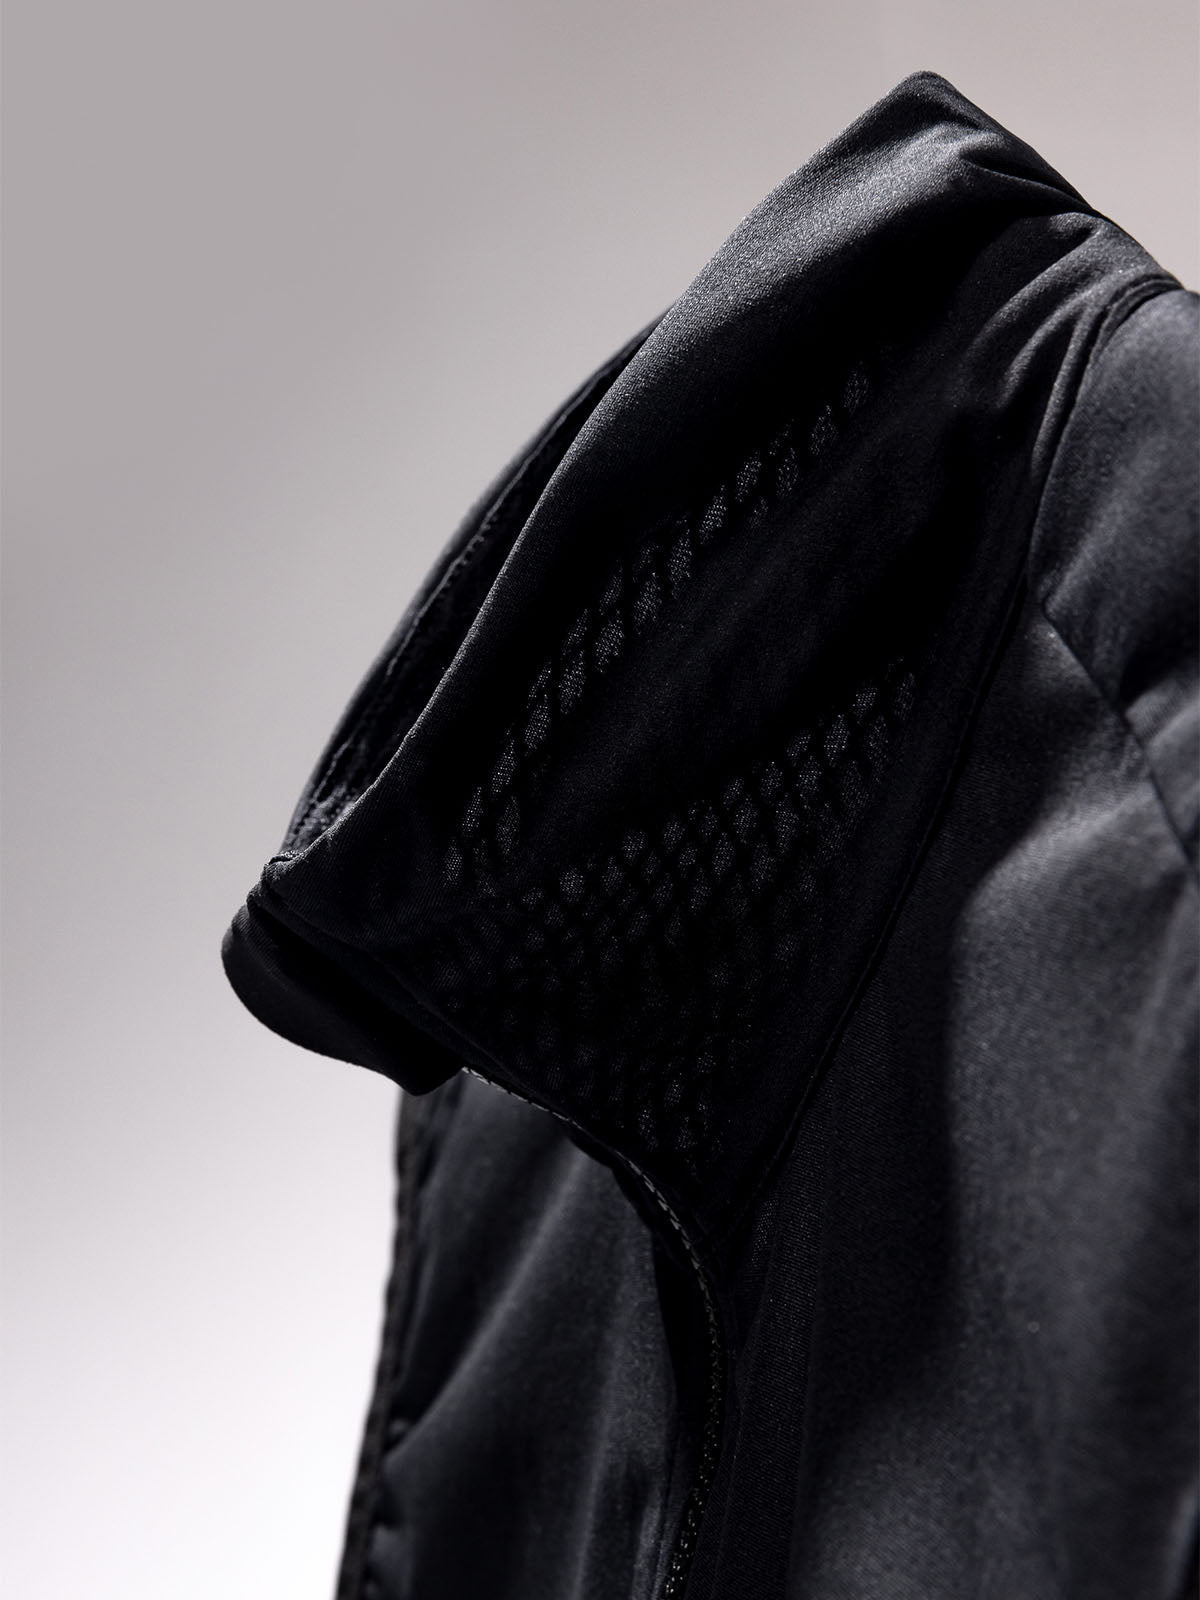 Altosphere Jacket by Mission Workshop - Bolsas impermeables y ropa técnica - San Francisco y Los Angeles - Construido para durar - Garantizado para siempre